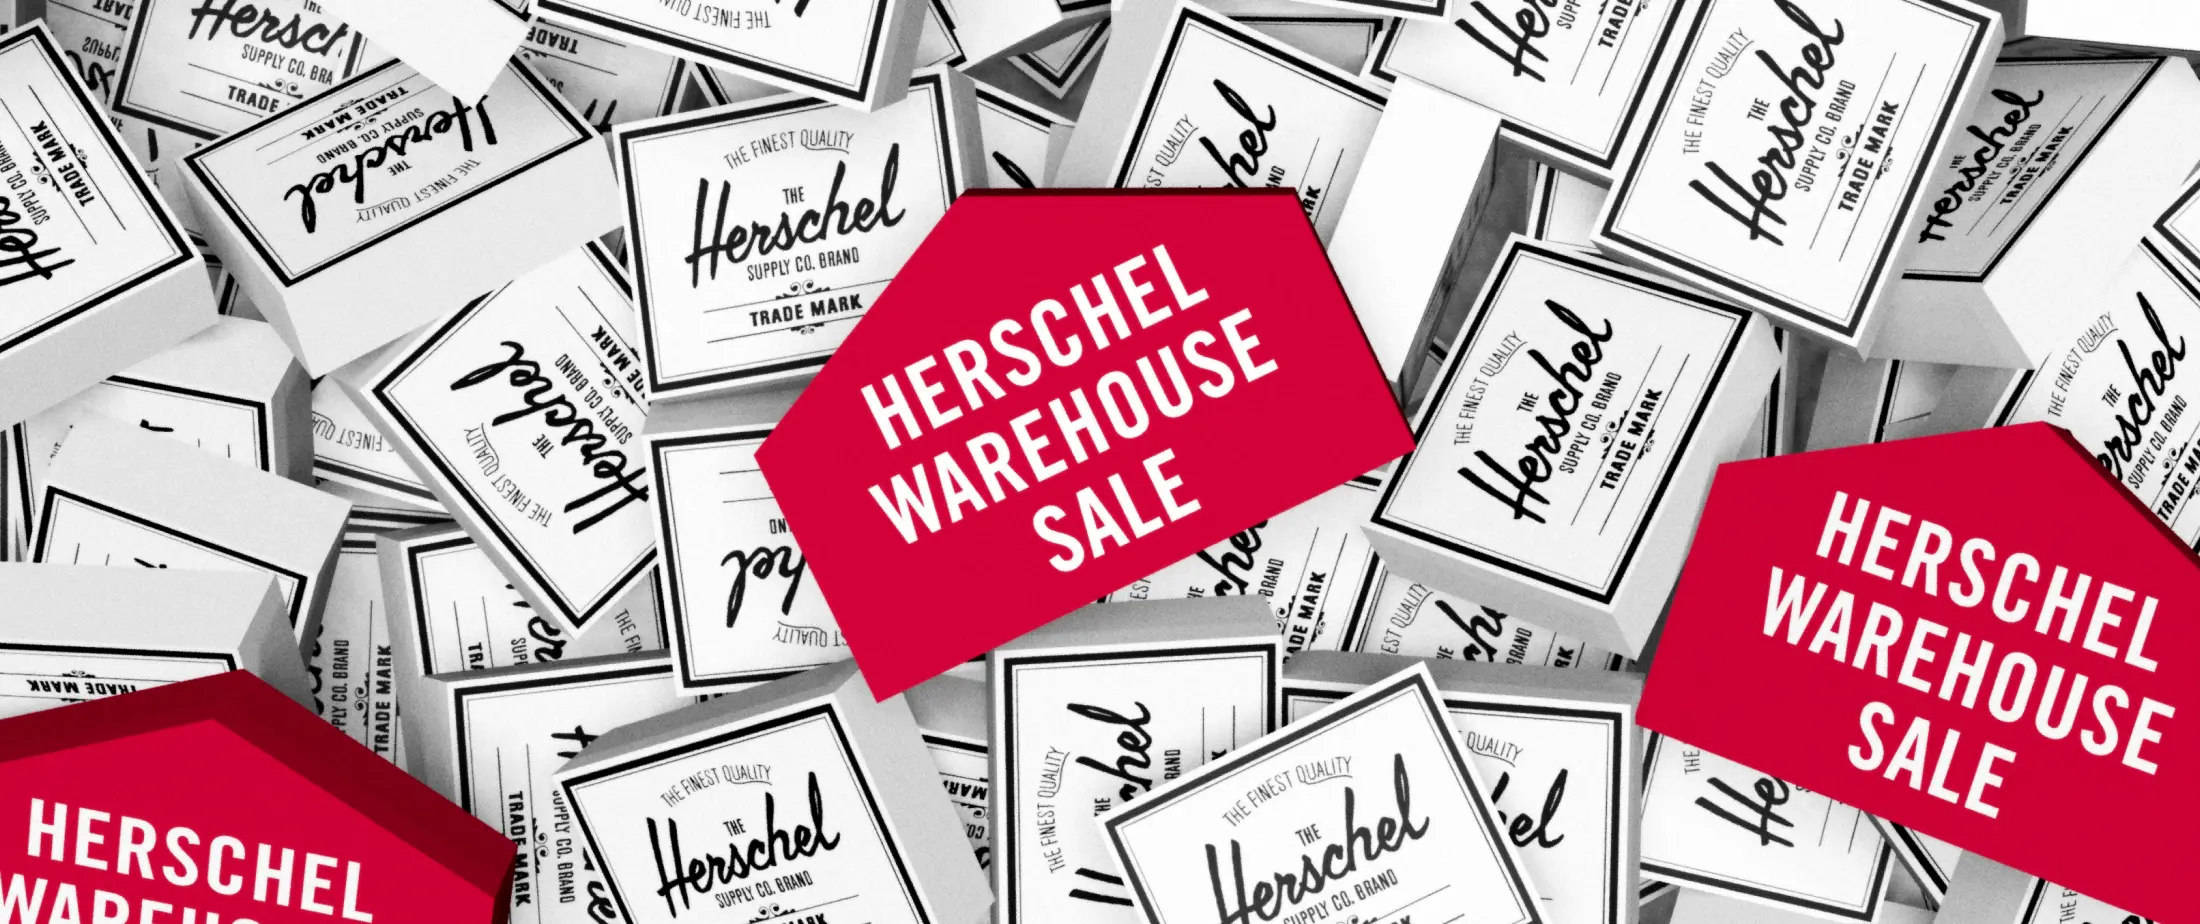 Herschel Warehouse Sale : r/vancouver